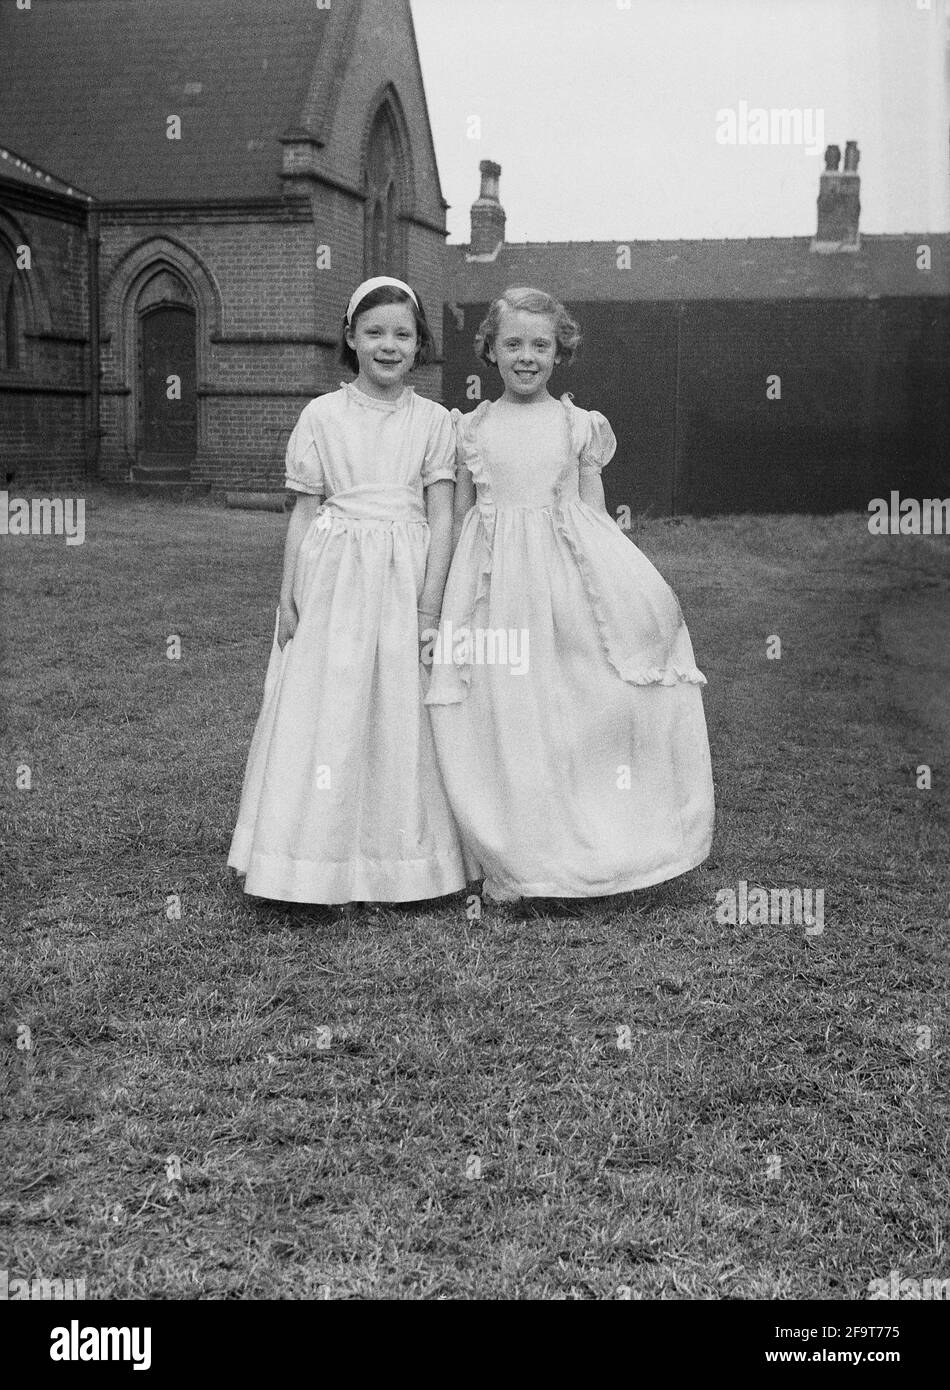 1956, historique, à l'extérieur dans le domaine d'une église, debout pour une photo, deux jeunes filles dans leurs jolies robes qu'ils portent dans la traditionnelle Mai Reine procession, Angleterre, Royaume-Uni. May Day est un ancien festival de printemps et de célébrations , y compris Morris Dancing, le couronnement d'une reine de mai et de danse autour d'un Maypole ayant eu lieu en Angleterre pendant des siècles. Sélectionnés parmi les filles de la région pour diriger le défilé du jour de mai, la reine de mai portant une couronne, commencerait les célébrations et dans le nord de l'Angleterre, les écoles du dimanche de l'Église ont dirigé l'organisation de la journée. Banque D'Images